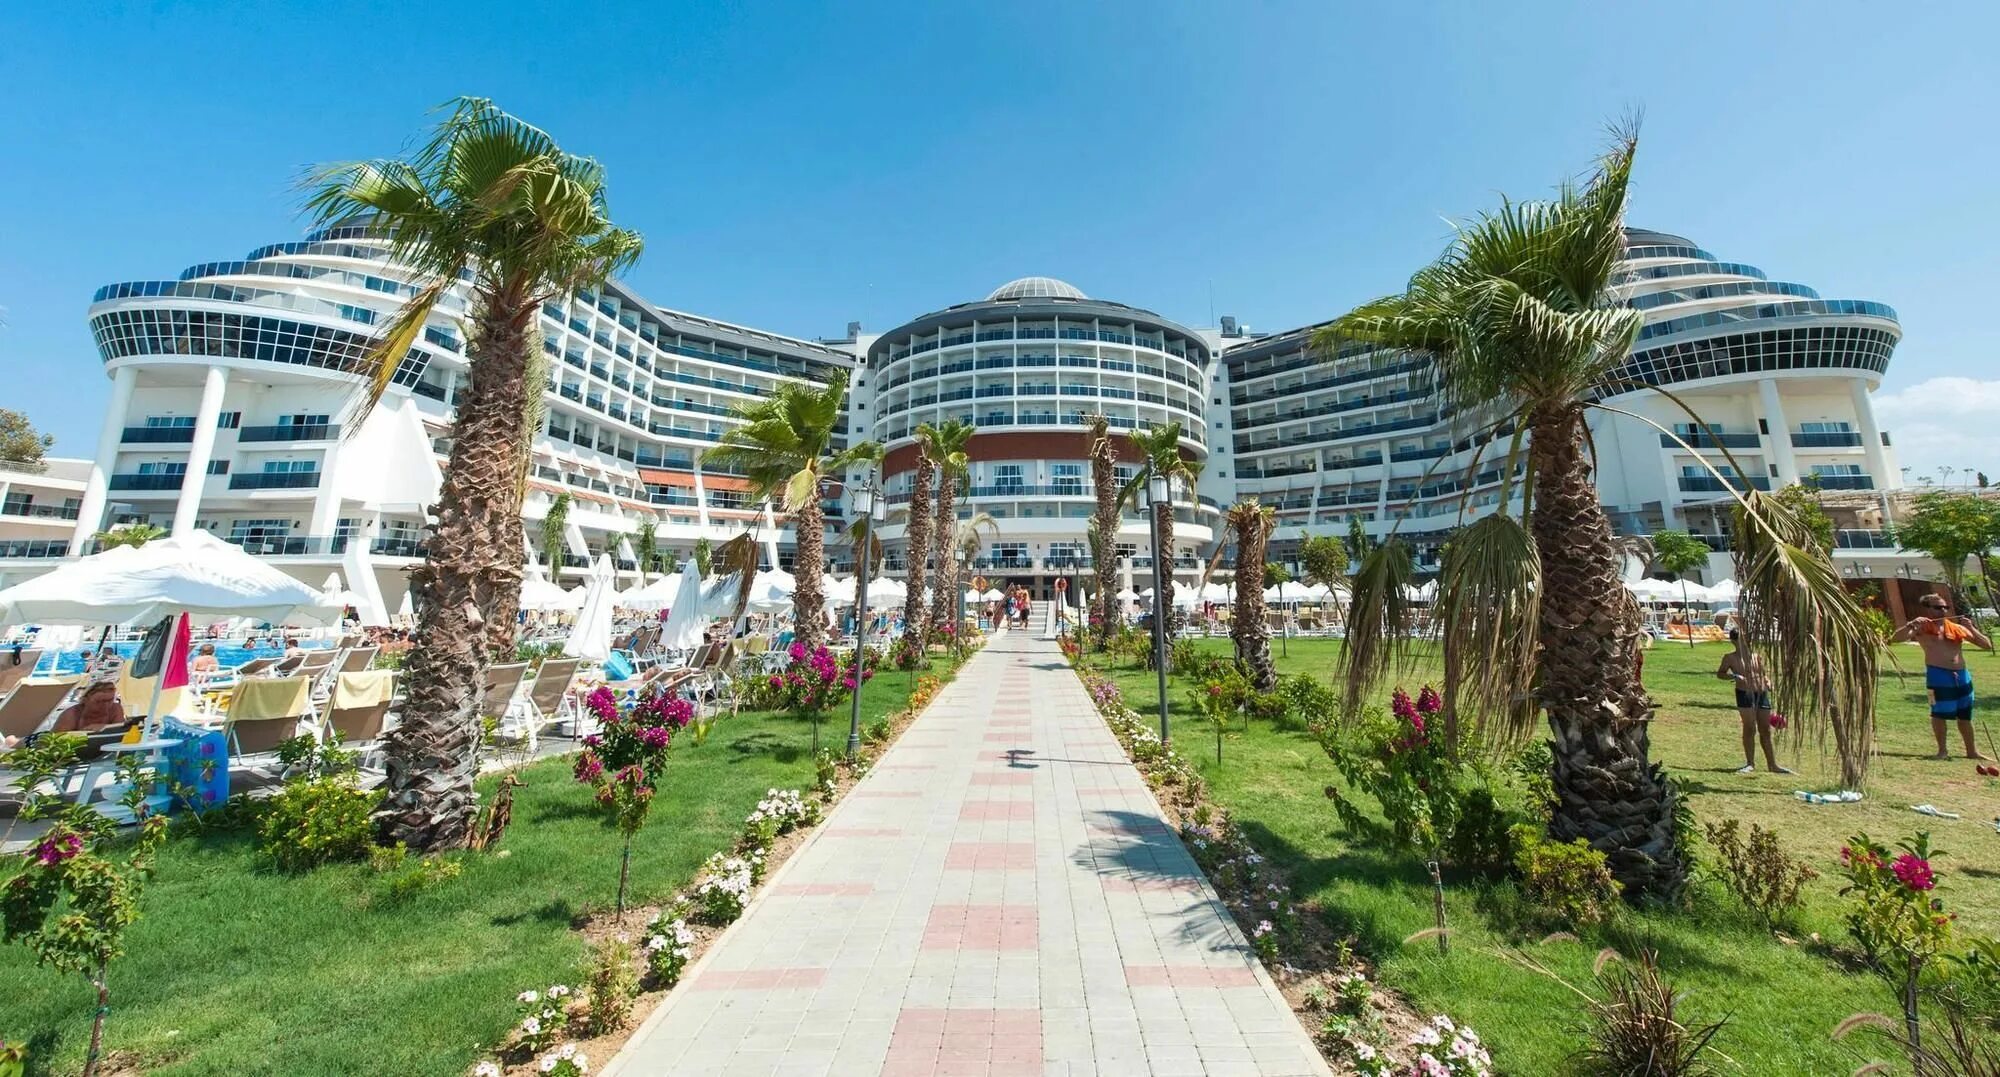 Sea seaden resort 5. Отели в Турции Sea Planet Resort Spa 5. Сиде отель Sea Planet Resort. Сеа планет Резорт спа Сиде. Sea Planet Resort Spa 5 Сиде.